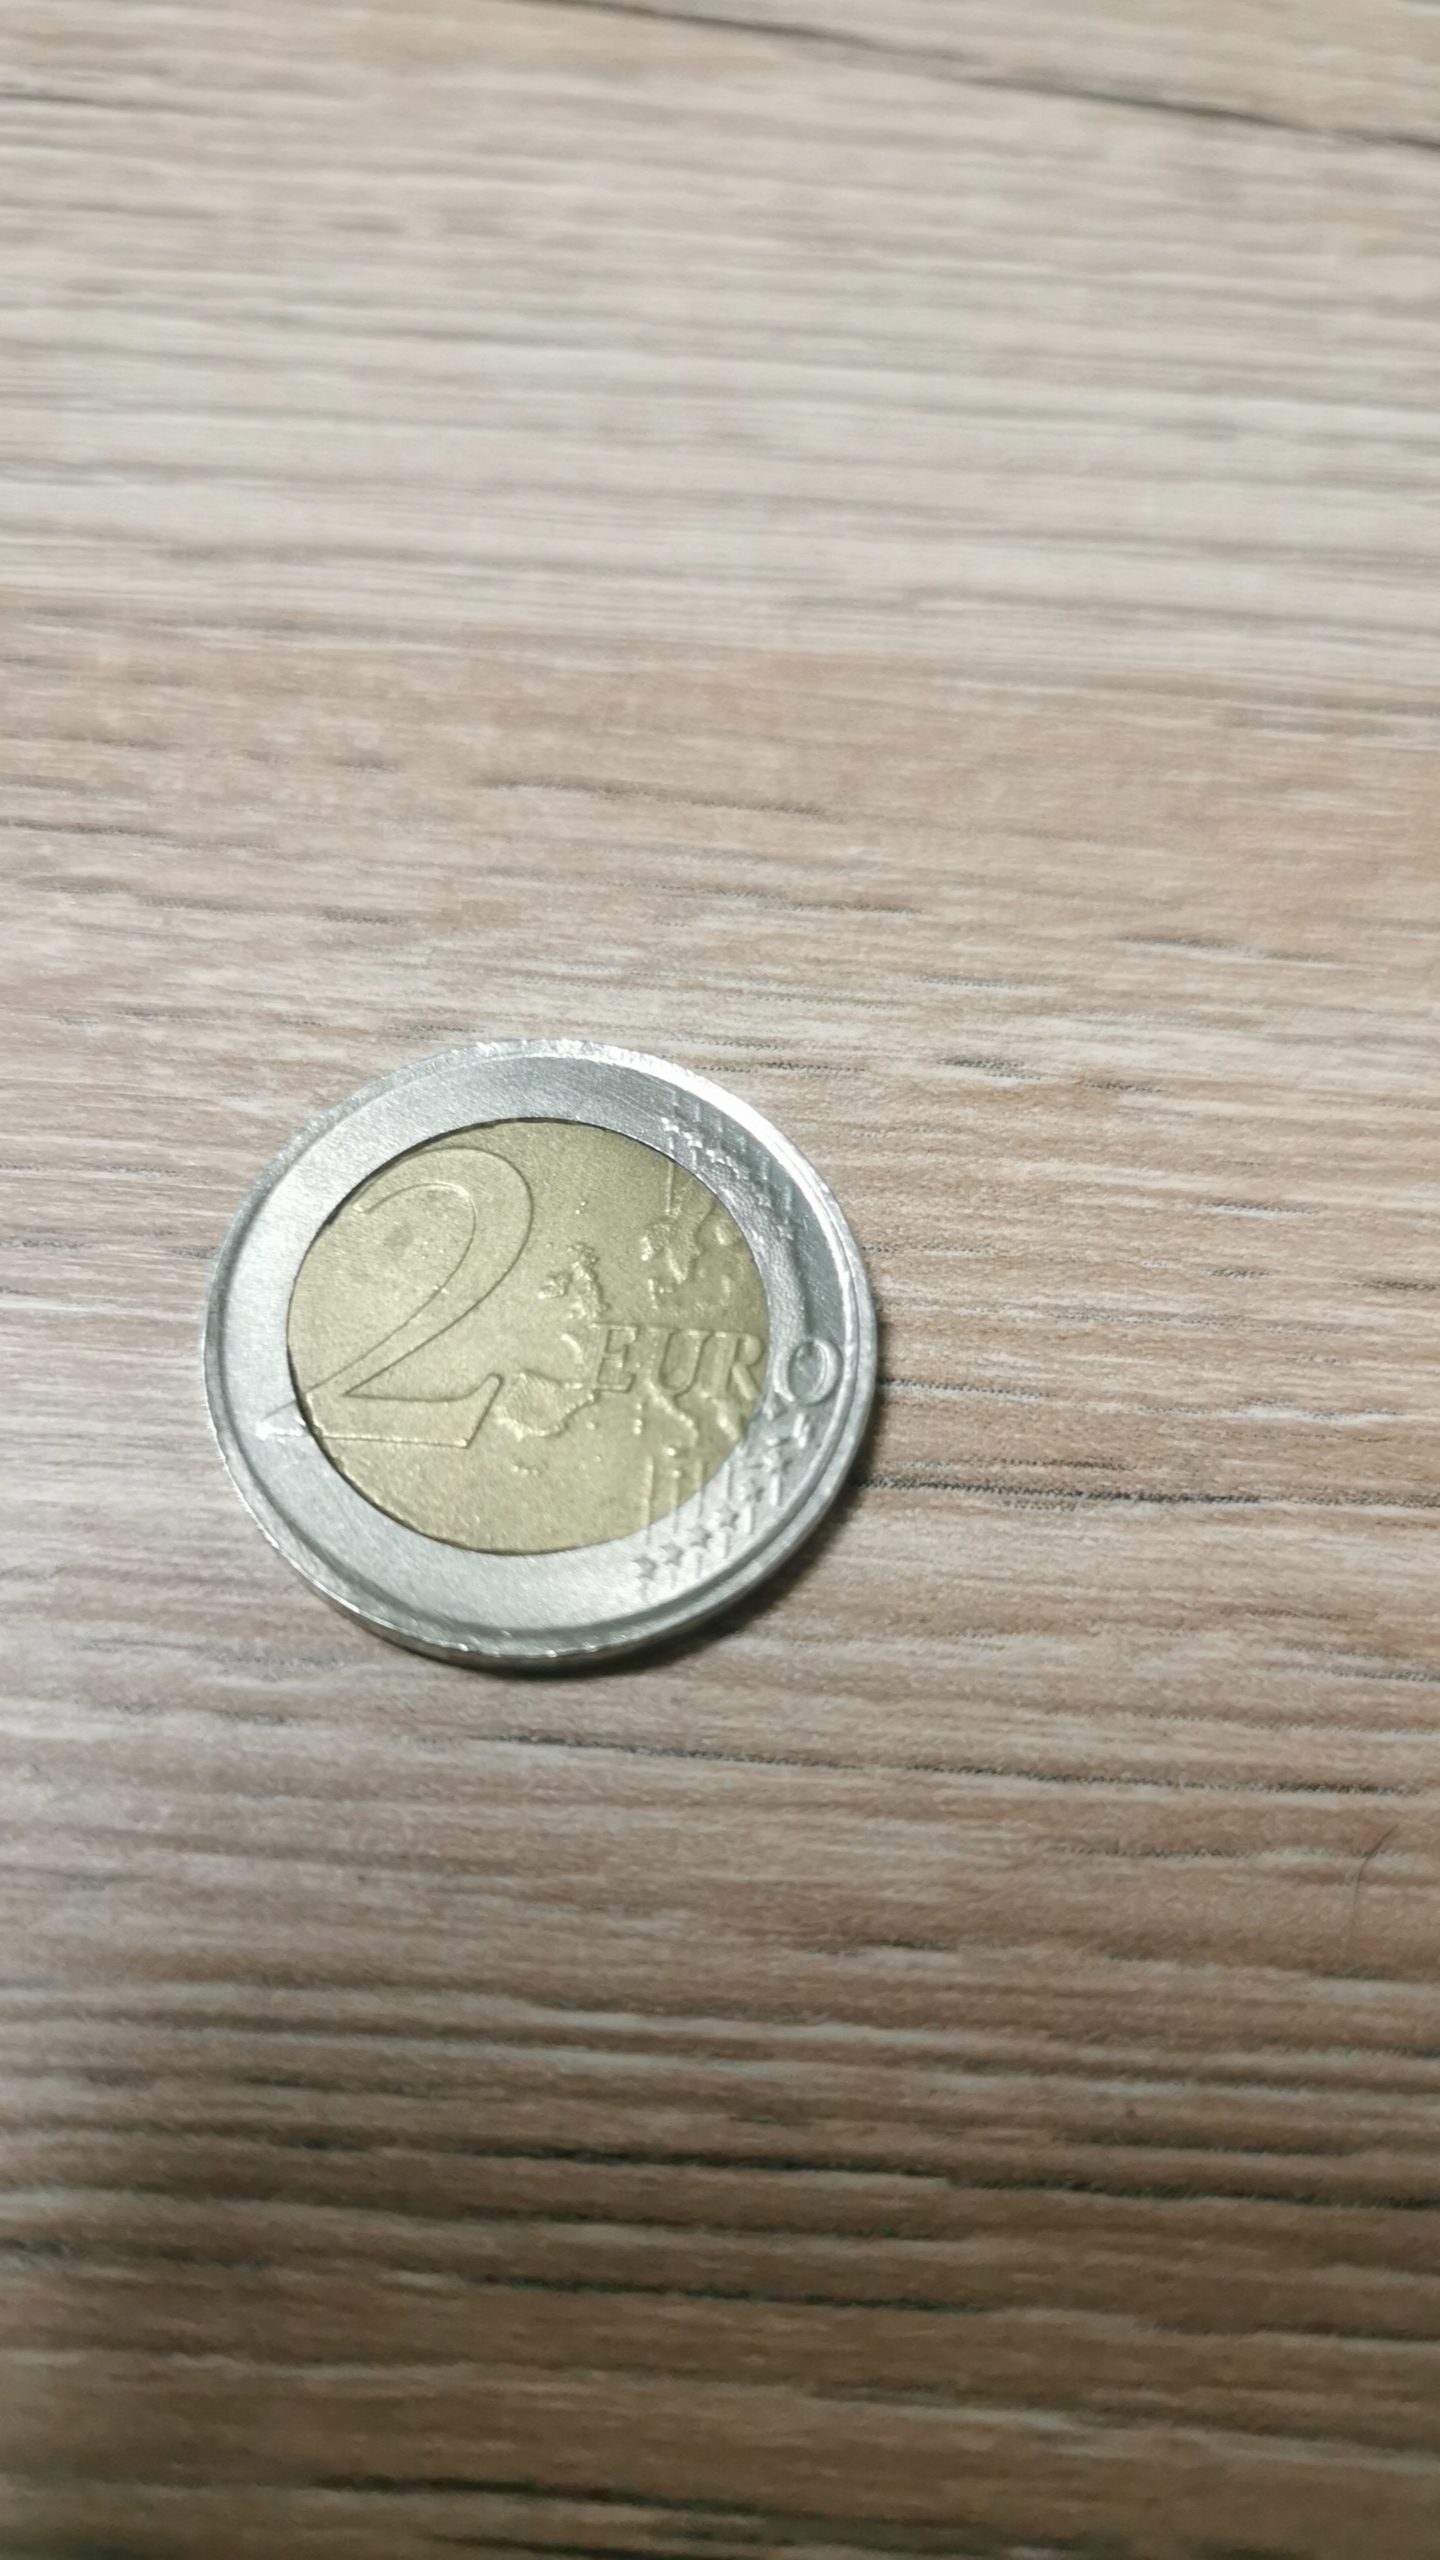 Italian Coin: Italienische 2 Euro Münze von 2002 mit Fehlprägung